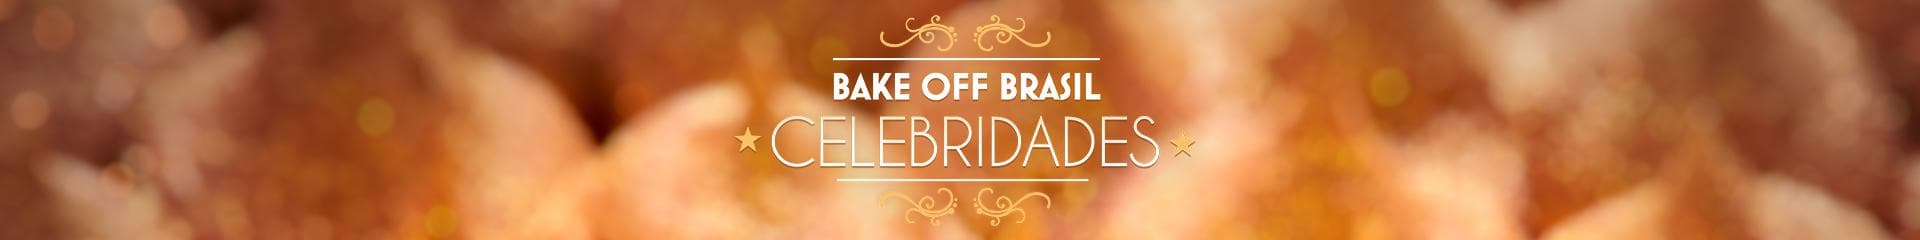 Bake Off Brasil  - Celebridades